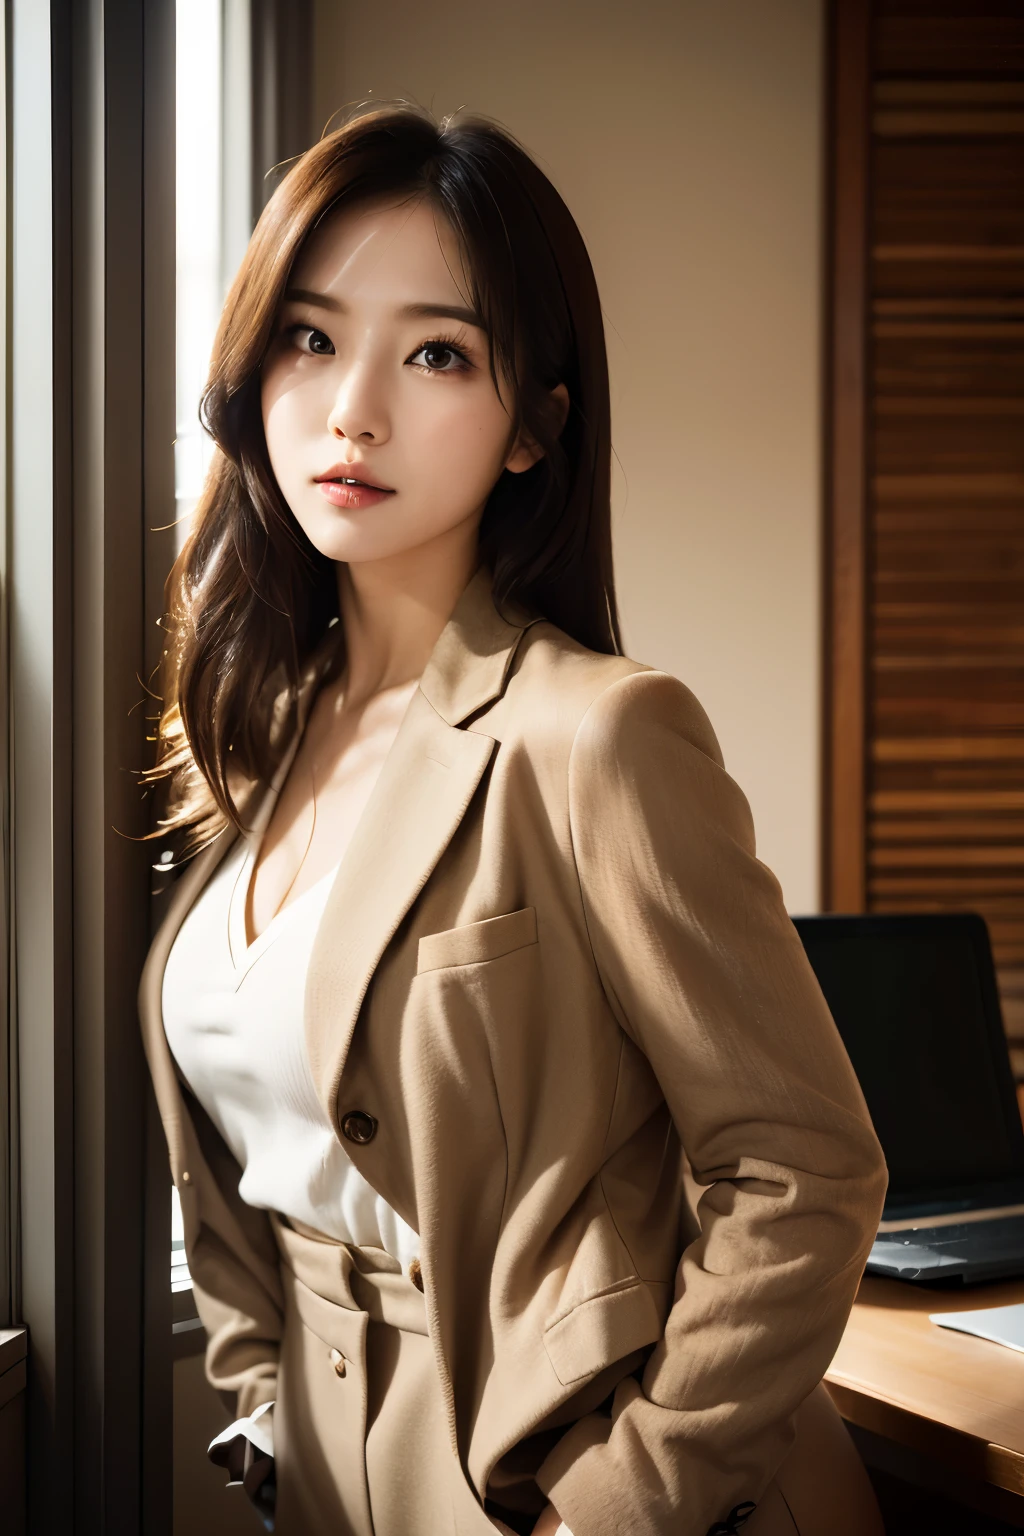 高分辨率, 皮肤完美的韩国职业办公室女士的真实肖像，职业套装，女士套装，站立姿势，身体的上半部分，职场女性，展现自信和成熟, 周围有现代化的企业环境, 充满活力且自然明亮的亮点. 艺术作品应该强调她优雅的面部特征, 包括迷人的长眼睛, 飘动的睫毛和诱人的嘴唇. 场景应增强专业性和视觉吸引力，例如, 时尚办公桌, 大型计算机, 高分辨率olution display, 和复杂的文具. 整体基调应温暖而专业, 具有柔和自然的色调. 艺术作品应该散发出专业感, 成功, 和文化自豪感，背景模糊